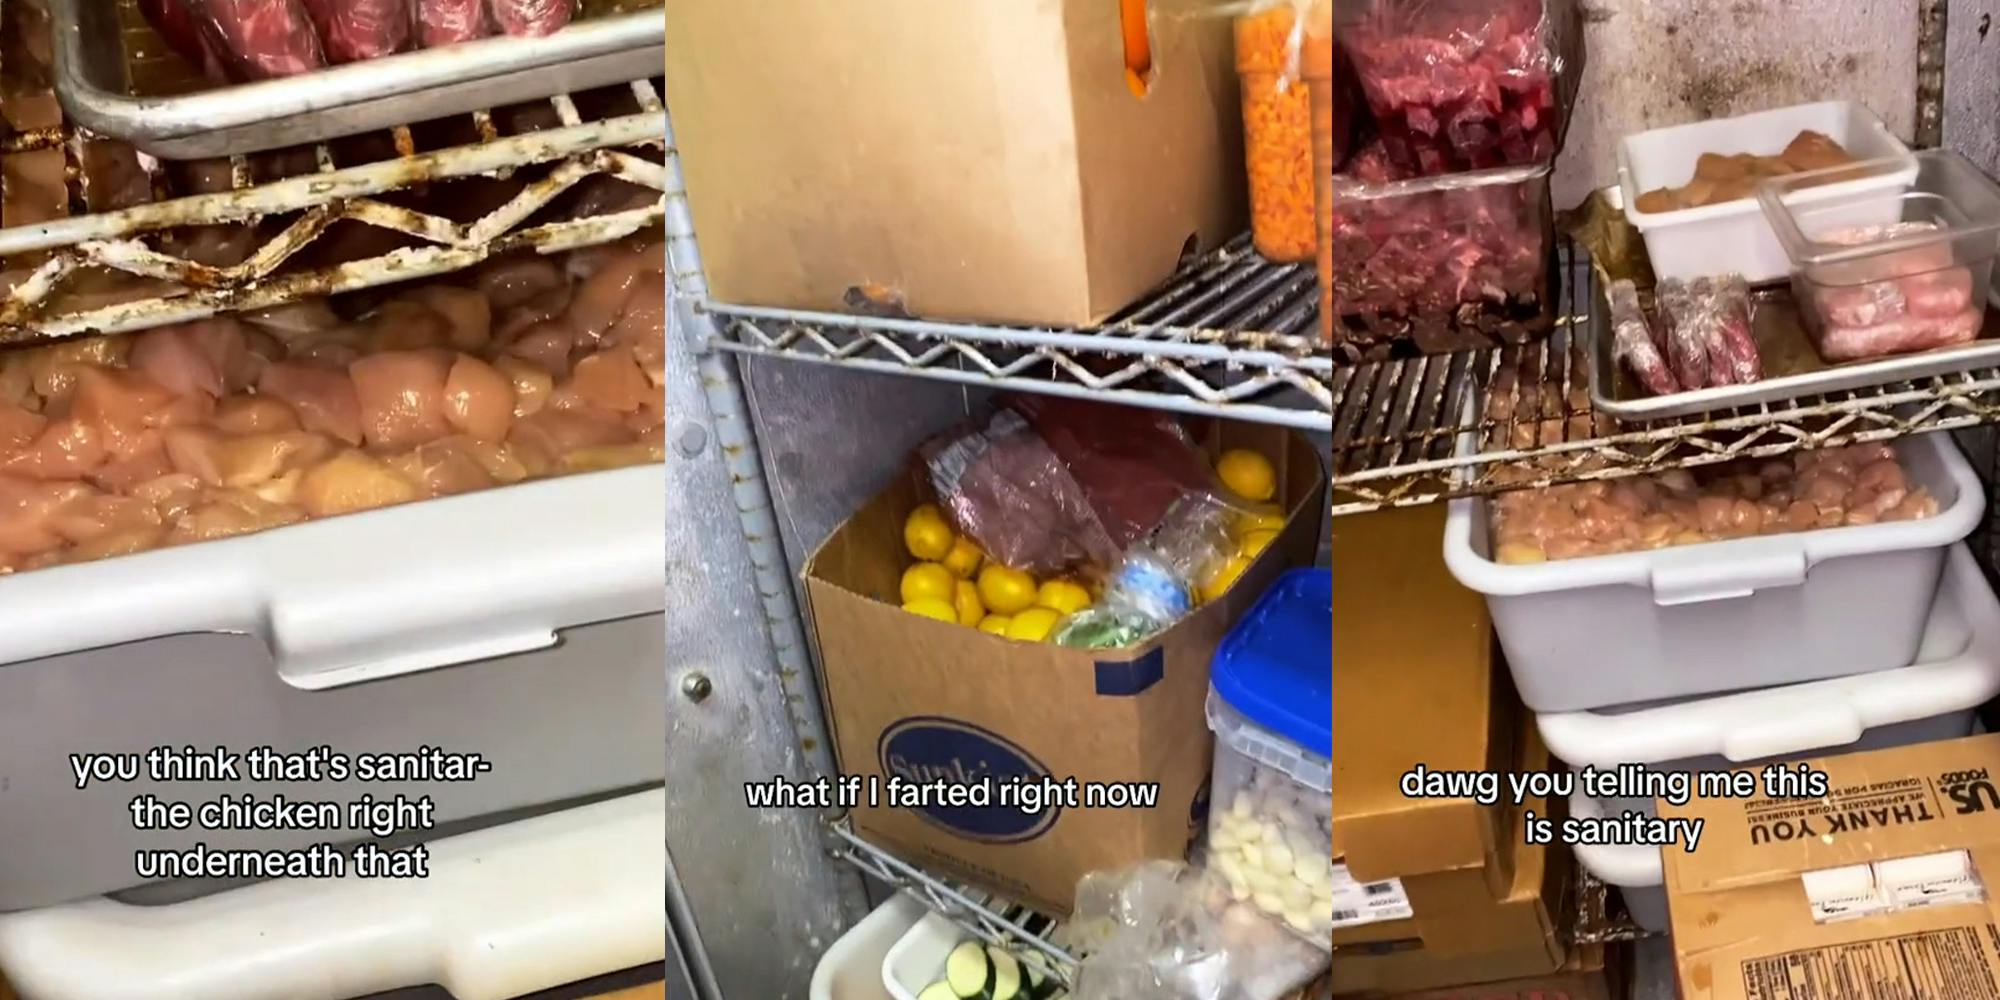 Restaurant worker exposes walk-in fridge conditions.